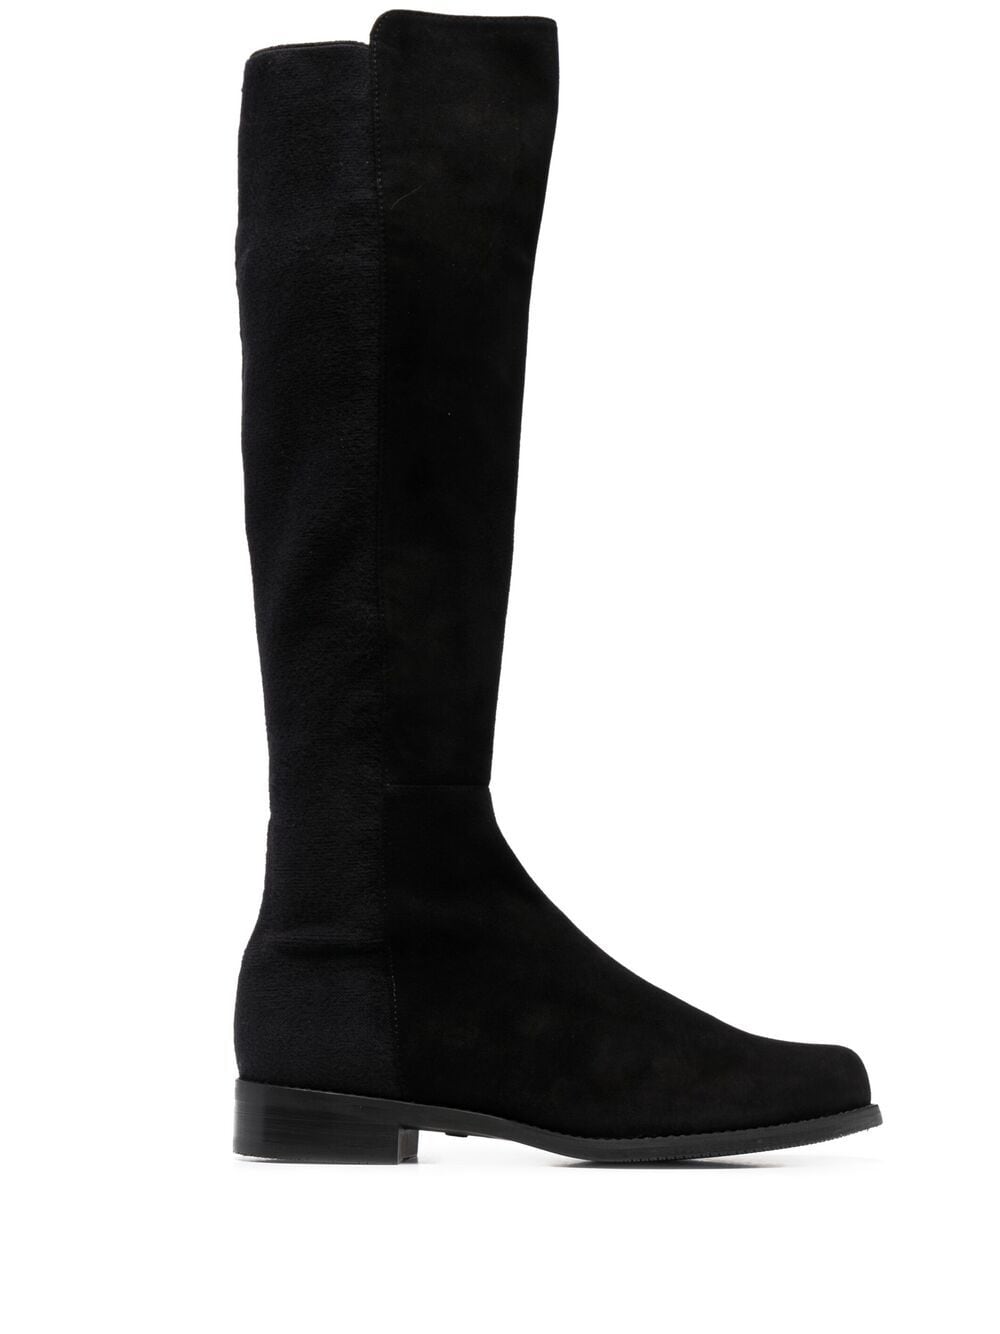 Stuart Weitzman Half 'n Half Knee-high Boots In Black